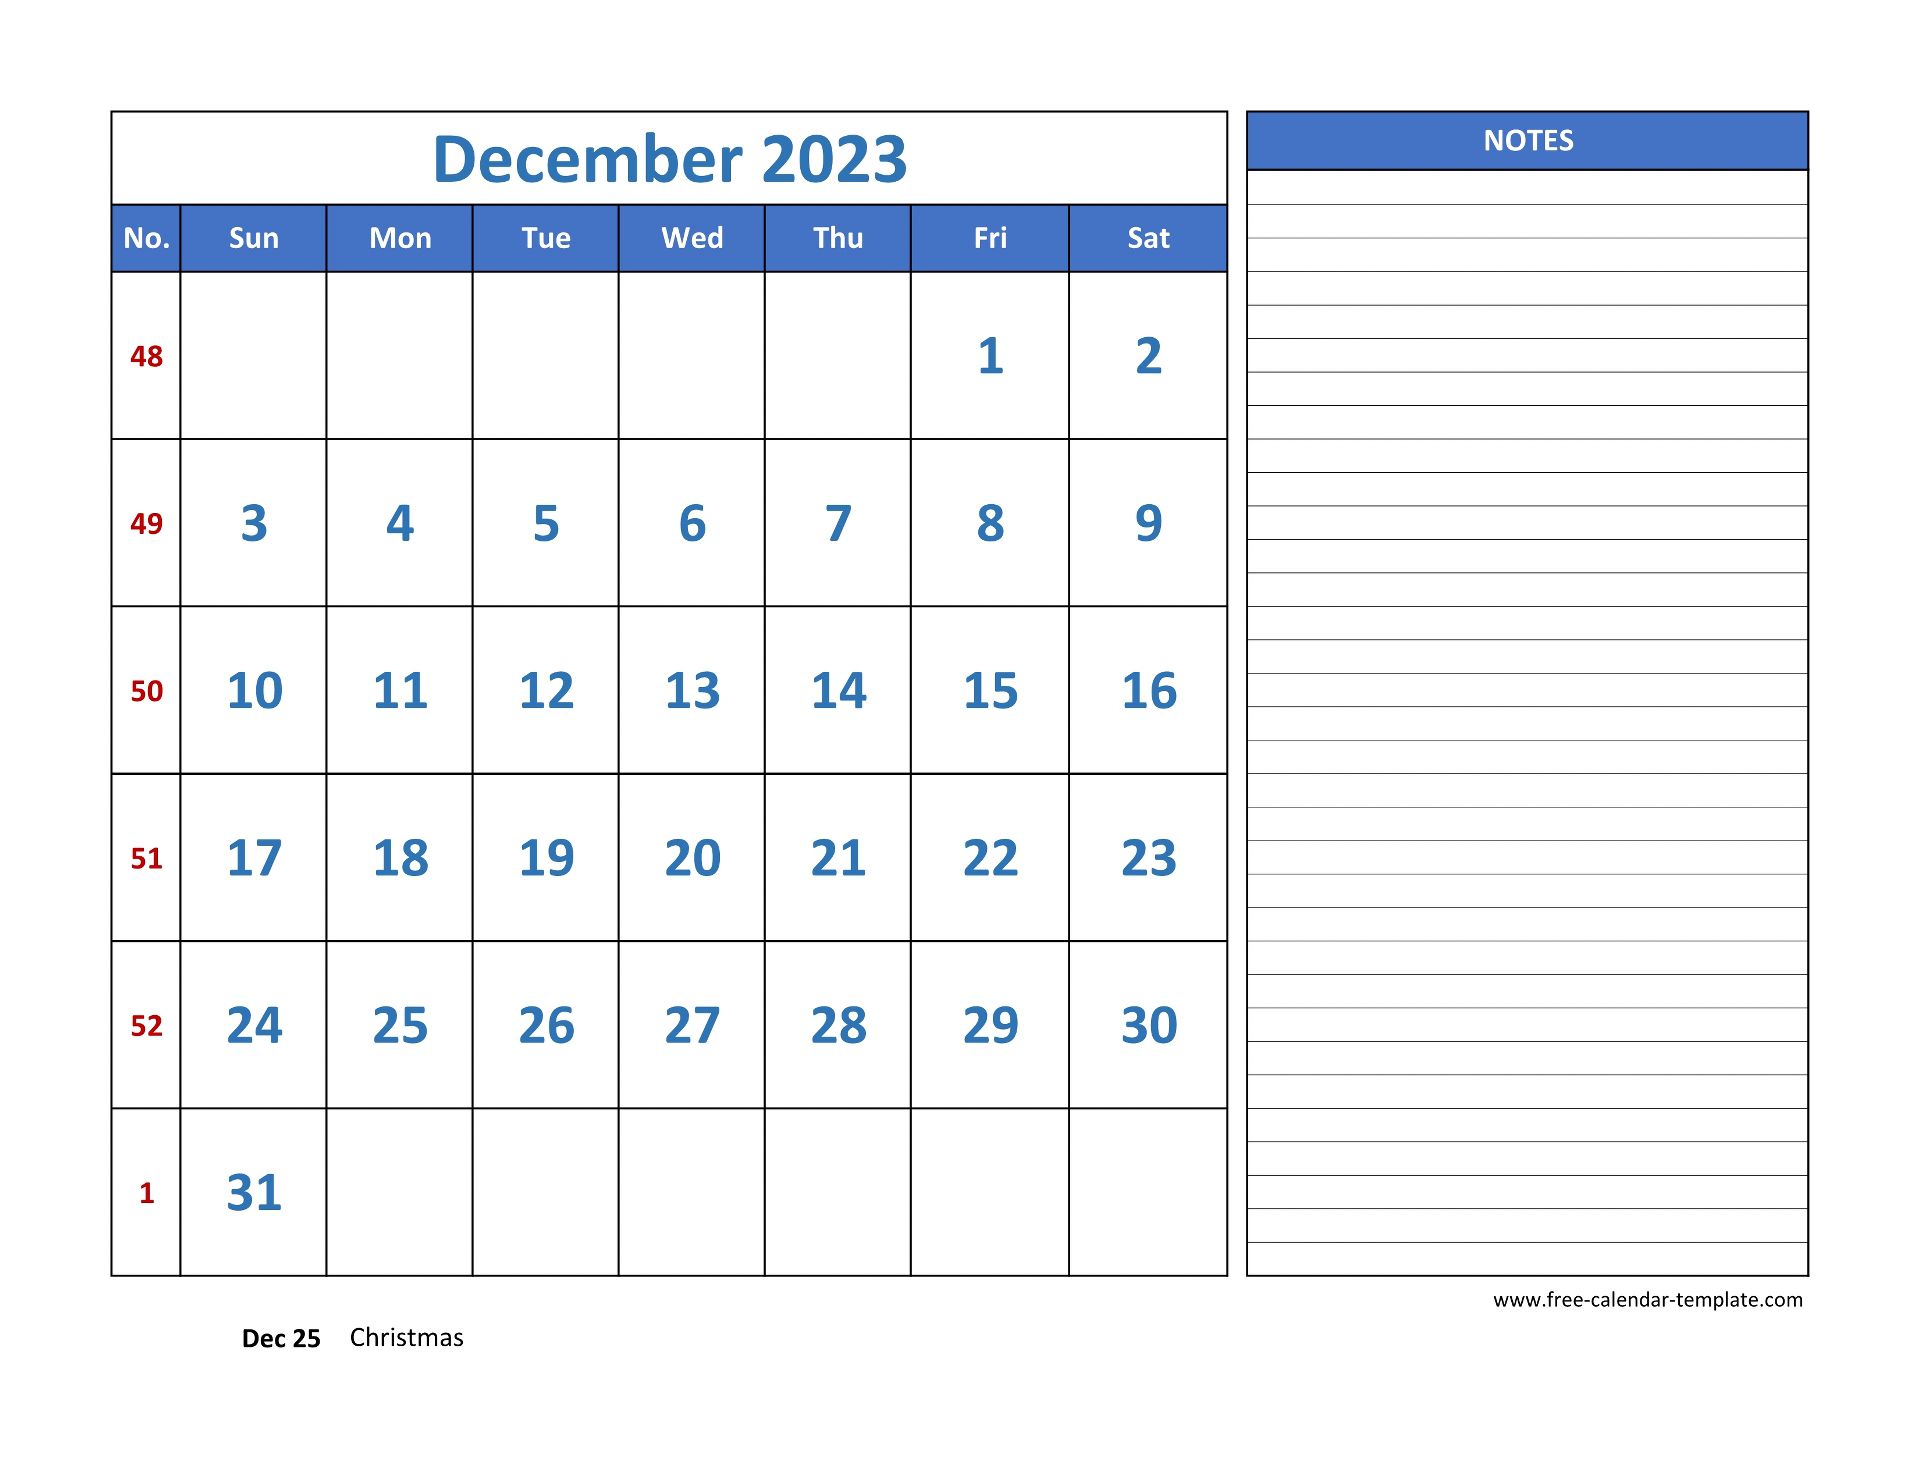 December 2023 Free Calendar Tempplate